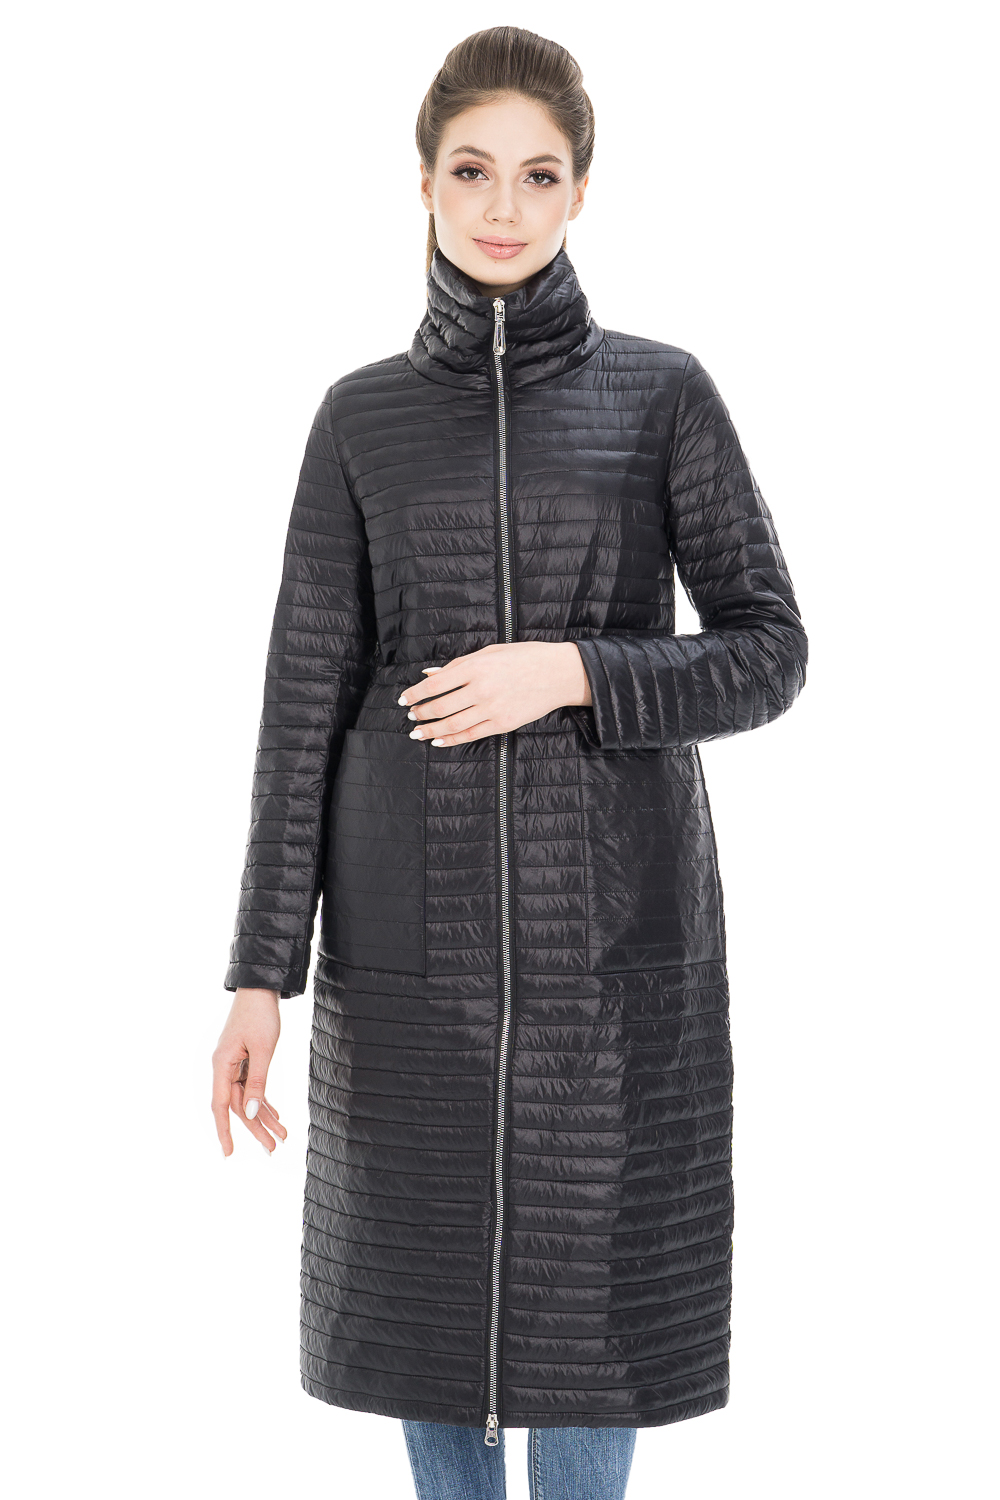 Пальто женское OHARA CC-20900 черное 42 RU